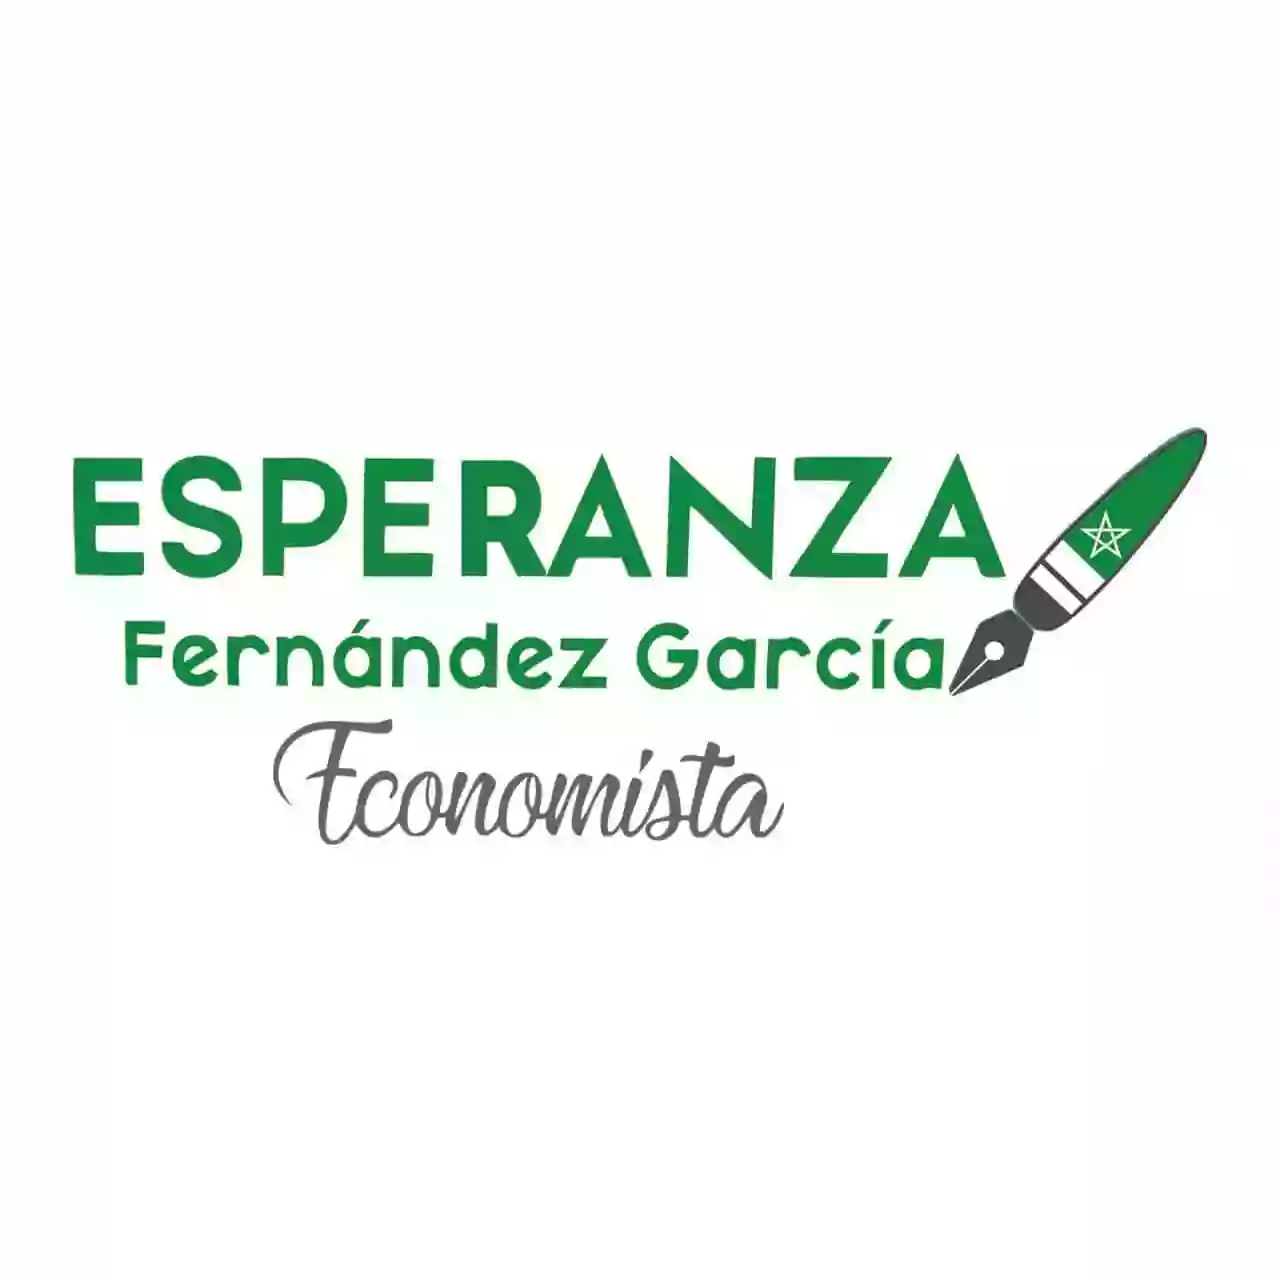 Esperanza Fernández García Economista